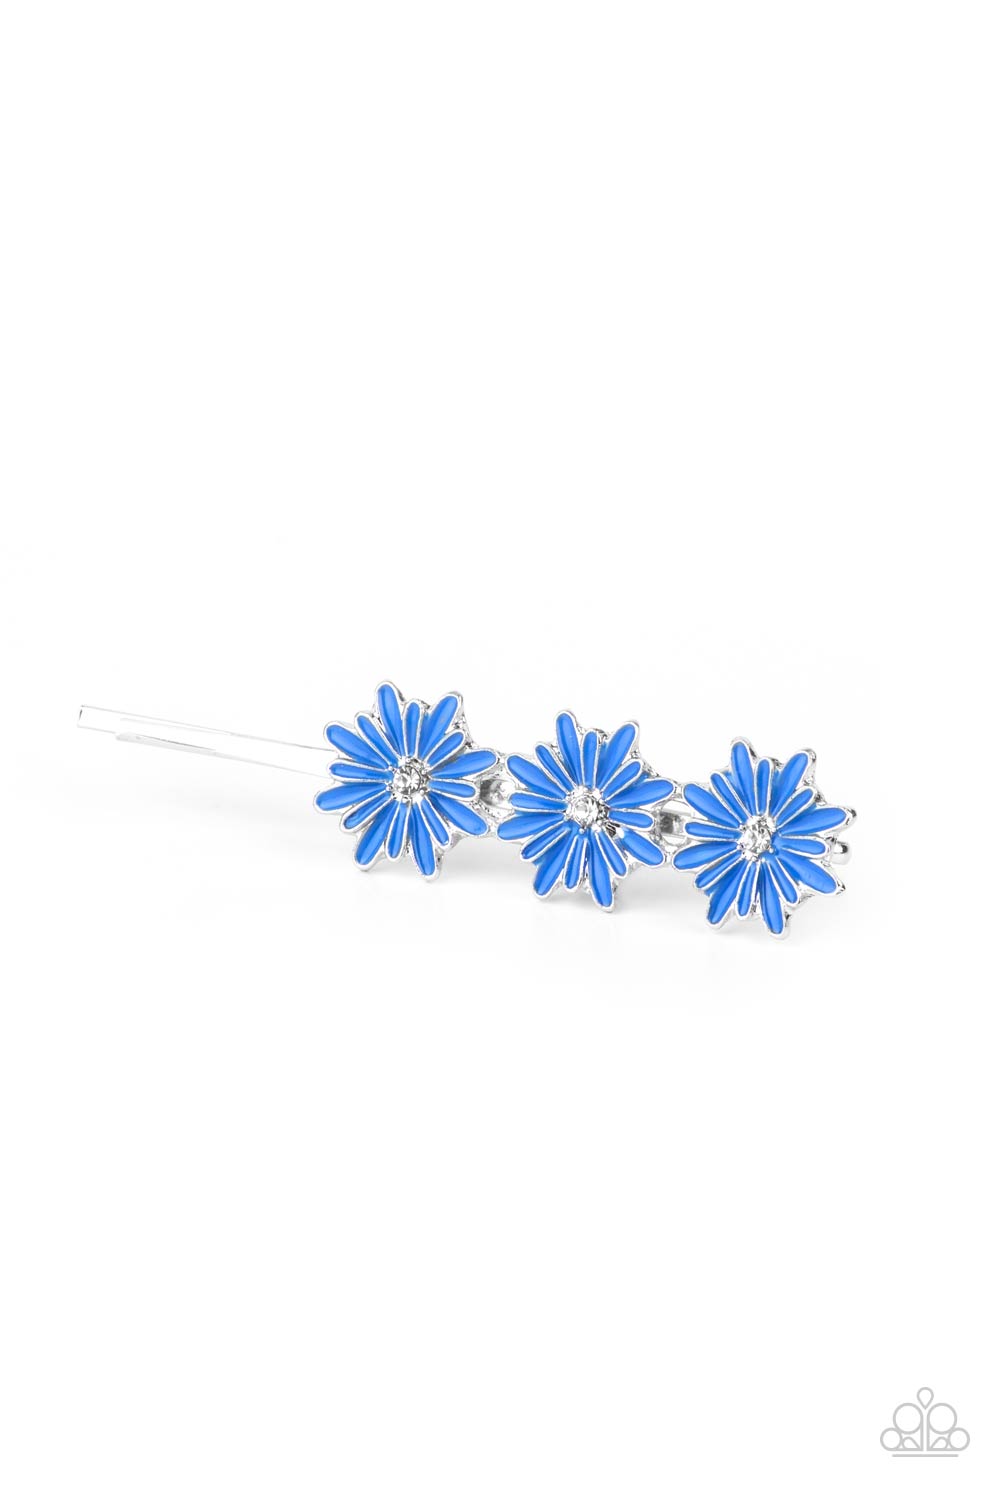 Paparazzi “Flower Patch Princess” Blue Hair Clip - Cindysblingboutique